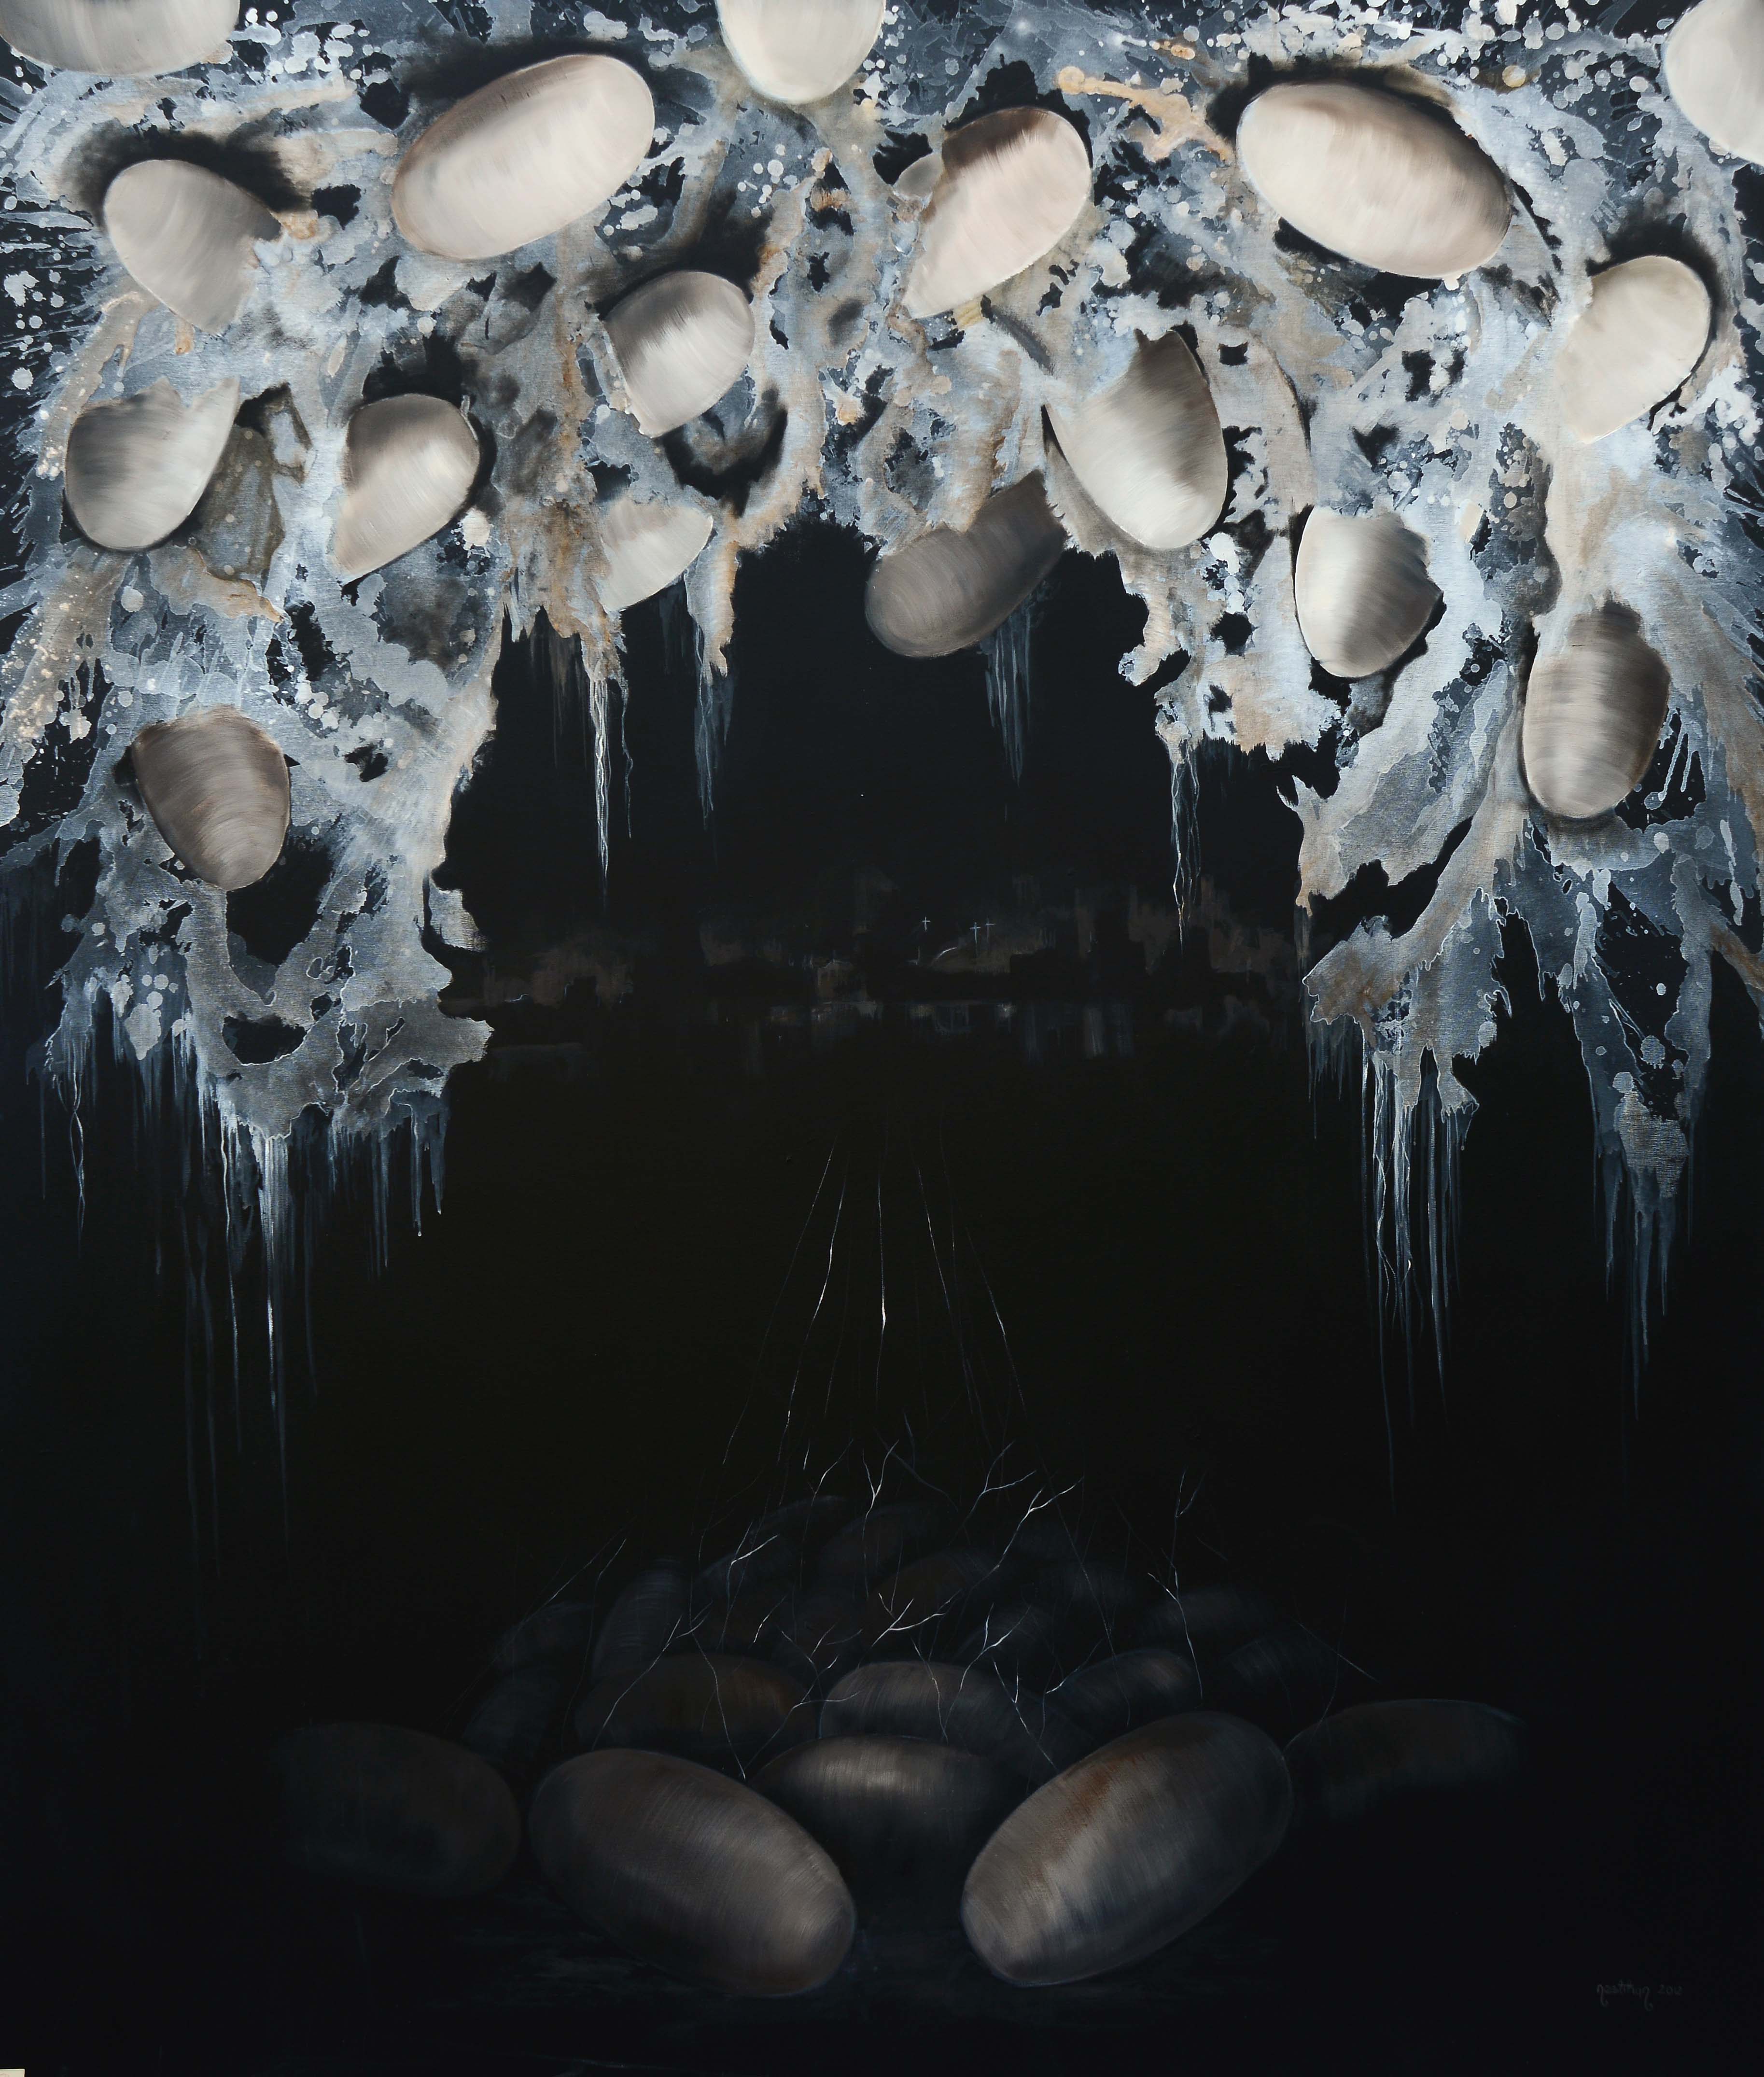 Lacrima, 2012, Tuval üzerine akrilik ve yağlıboya- Acrylic and oil on canvas, 200×170 cm